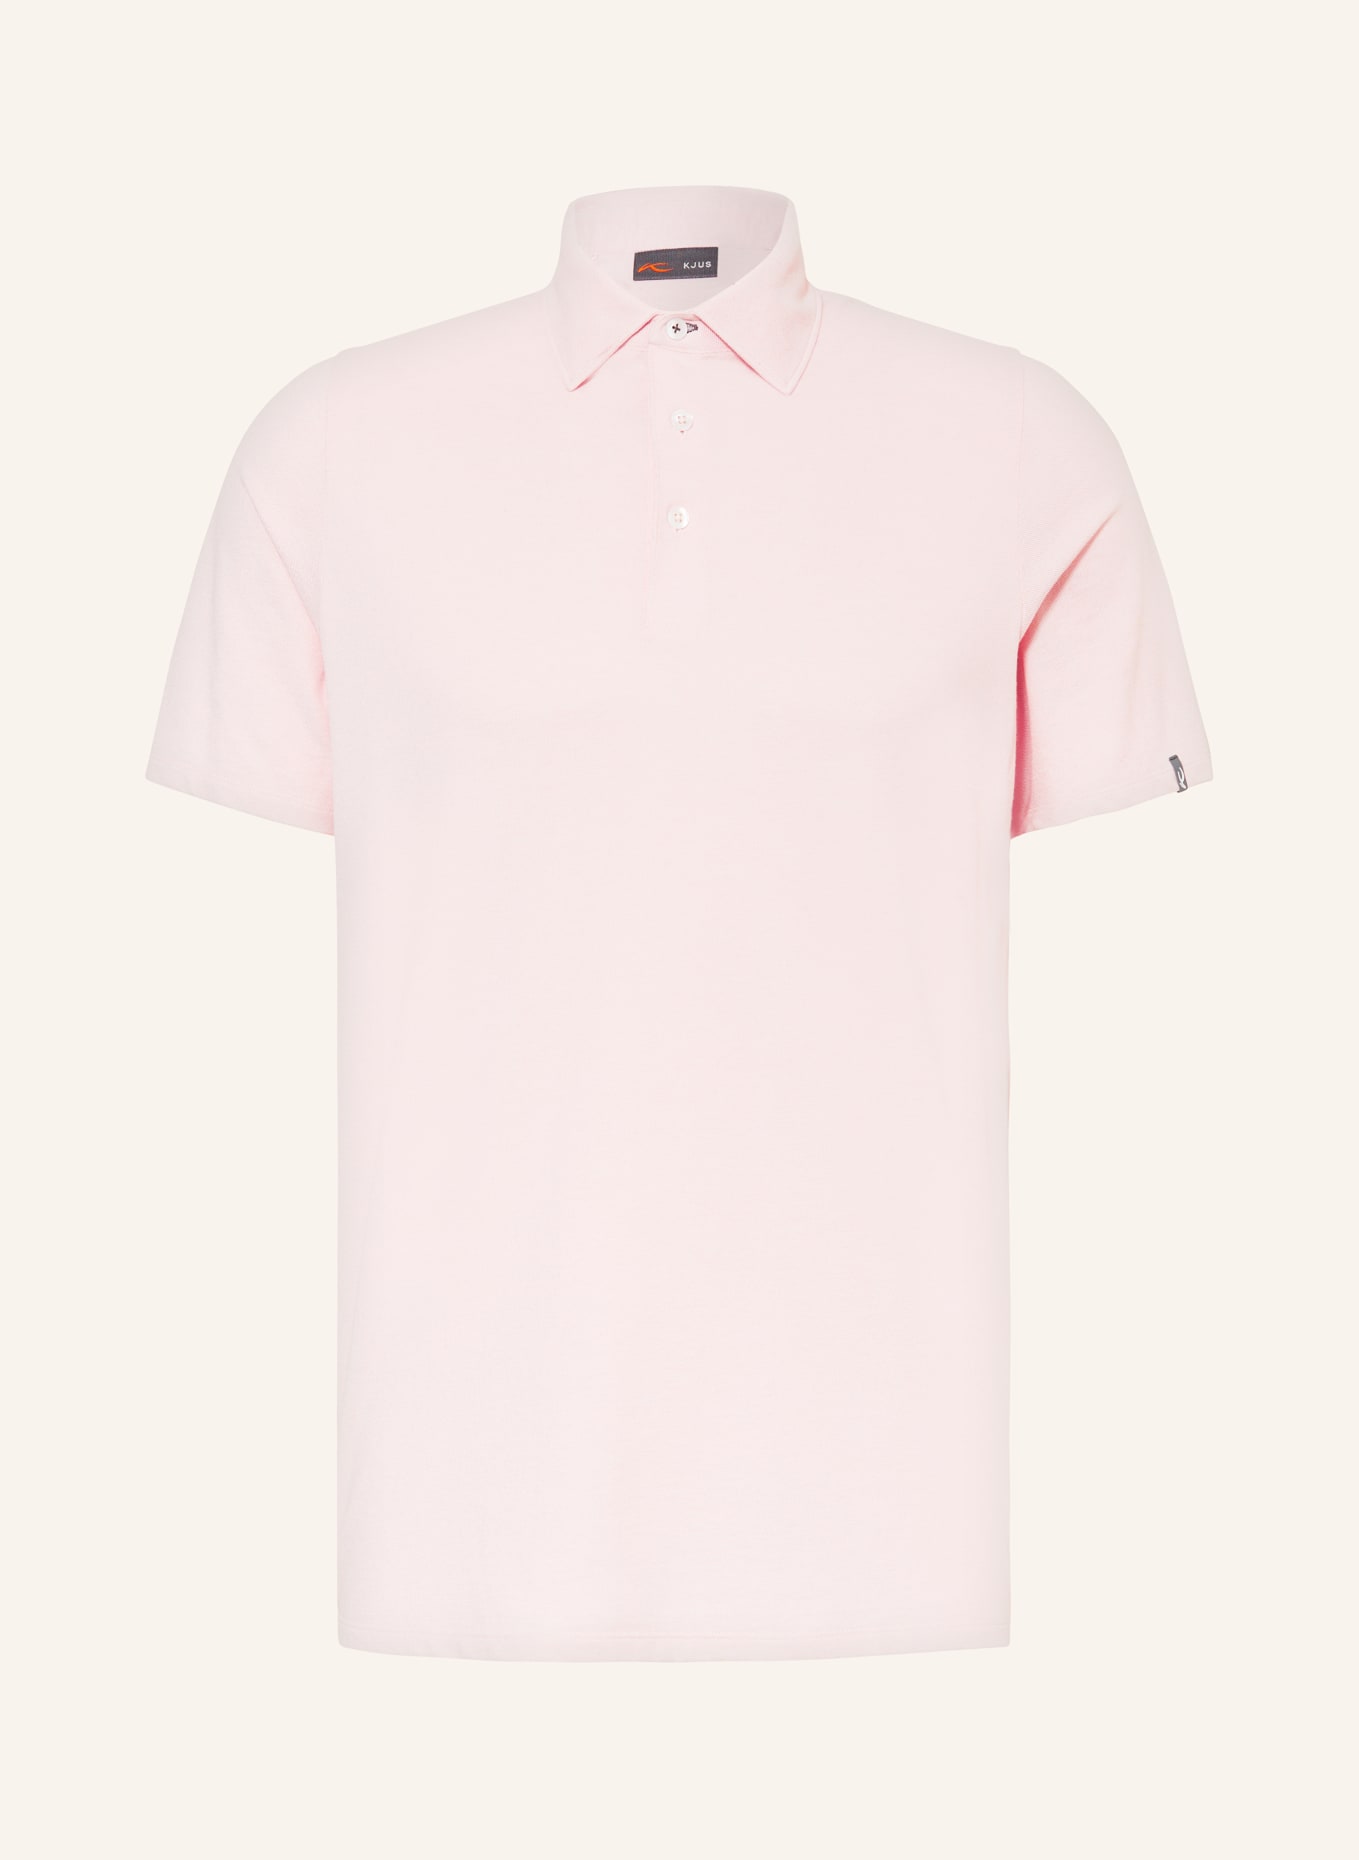 KJUS Performance polo shirt, Color: K0050108 Pink Salt (Image 1)